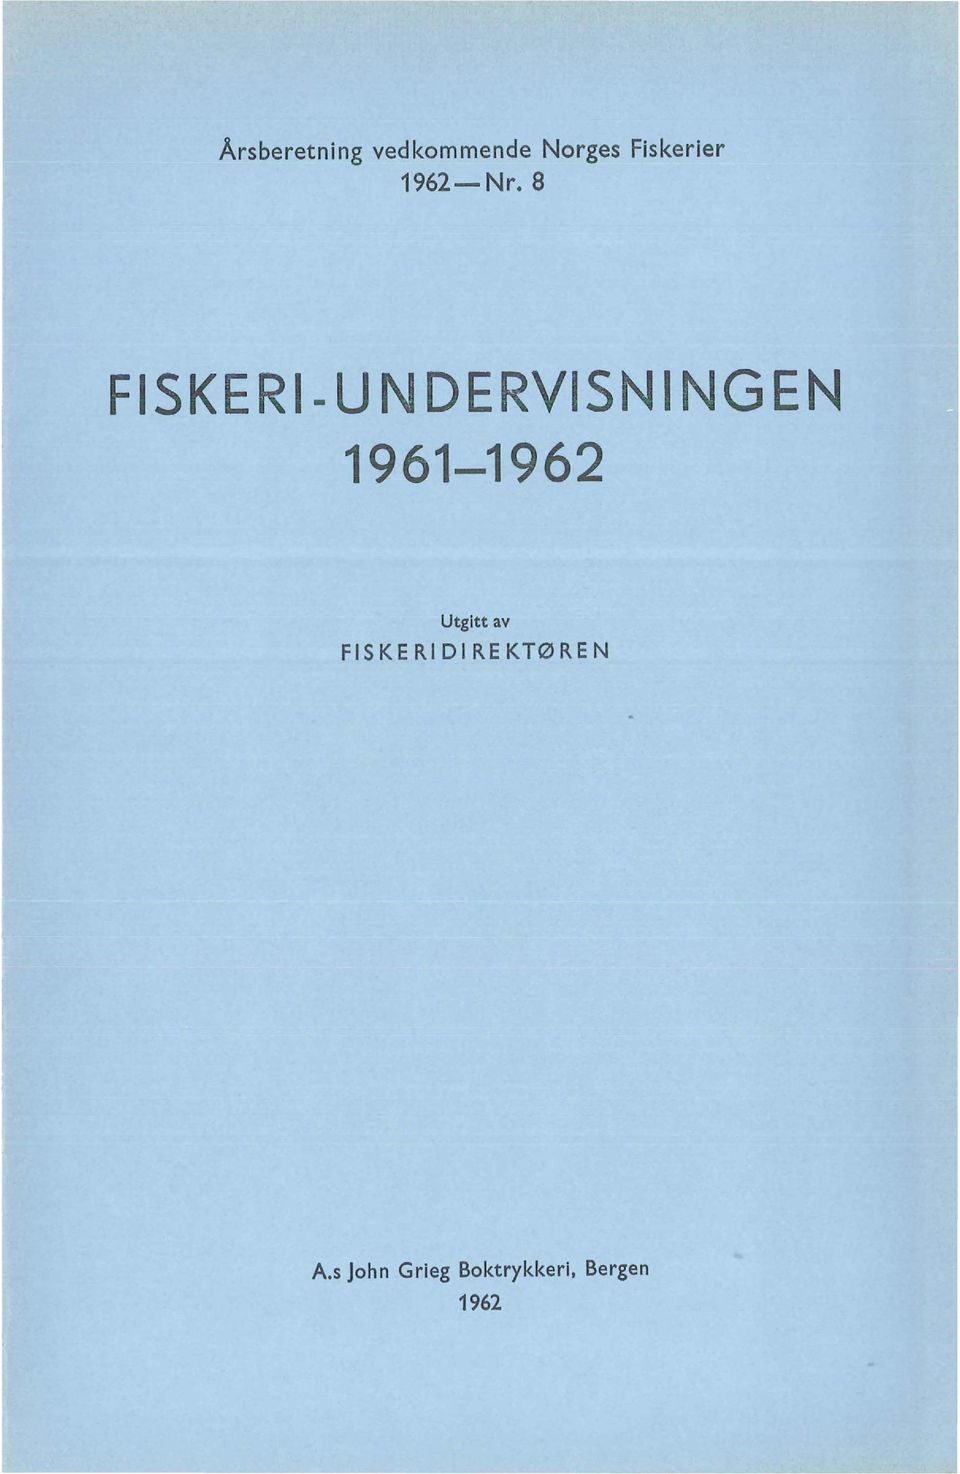 8 FISKERI- UN DERVISN l NG EN 1961-1962